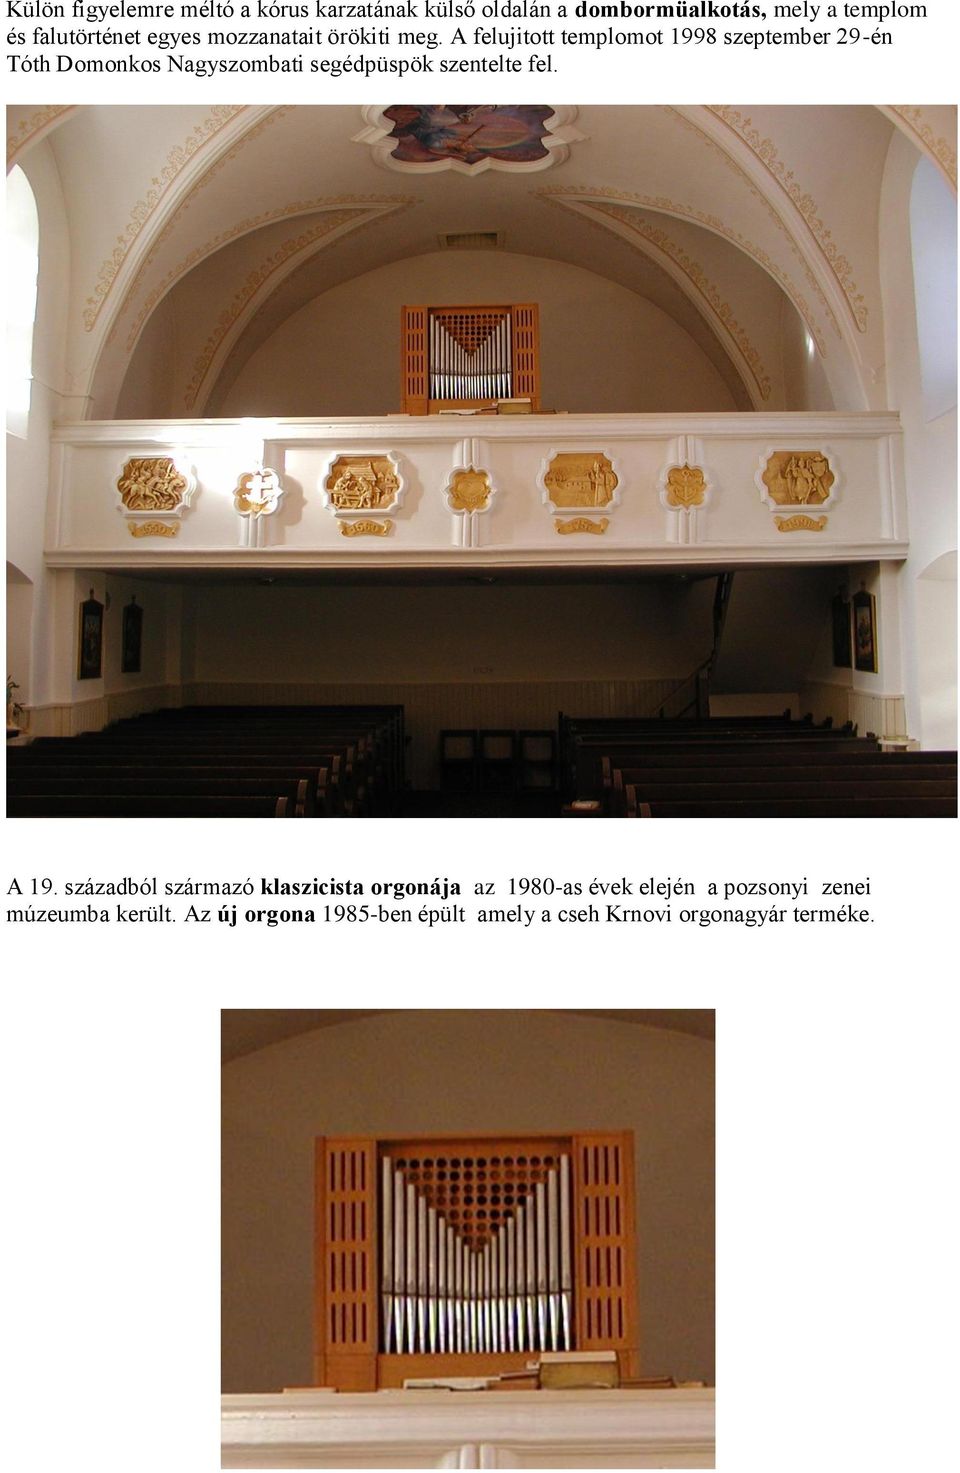 A felujitott templomot 1998 szeptember 29-én Tóth Domonkos Nagyszombati segédpüspök szentelte fel.